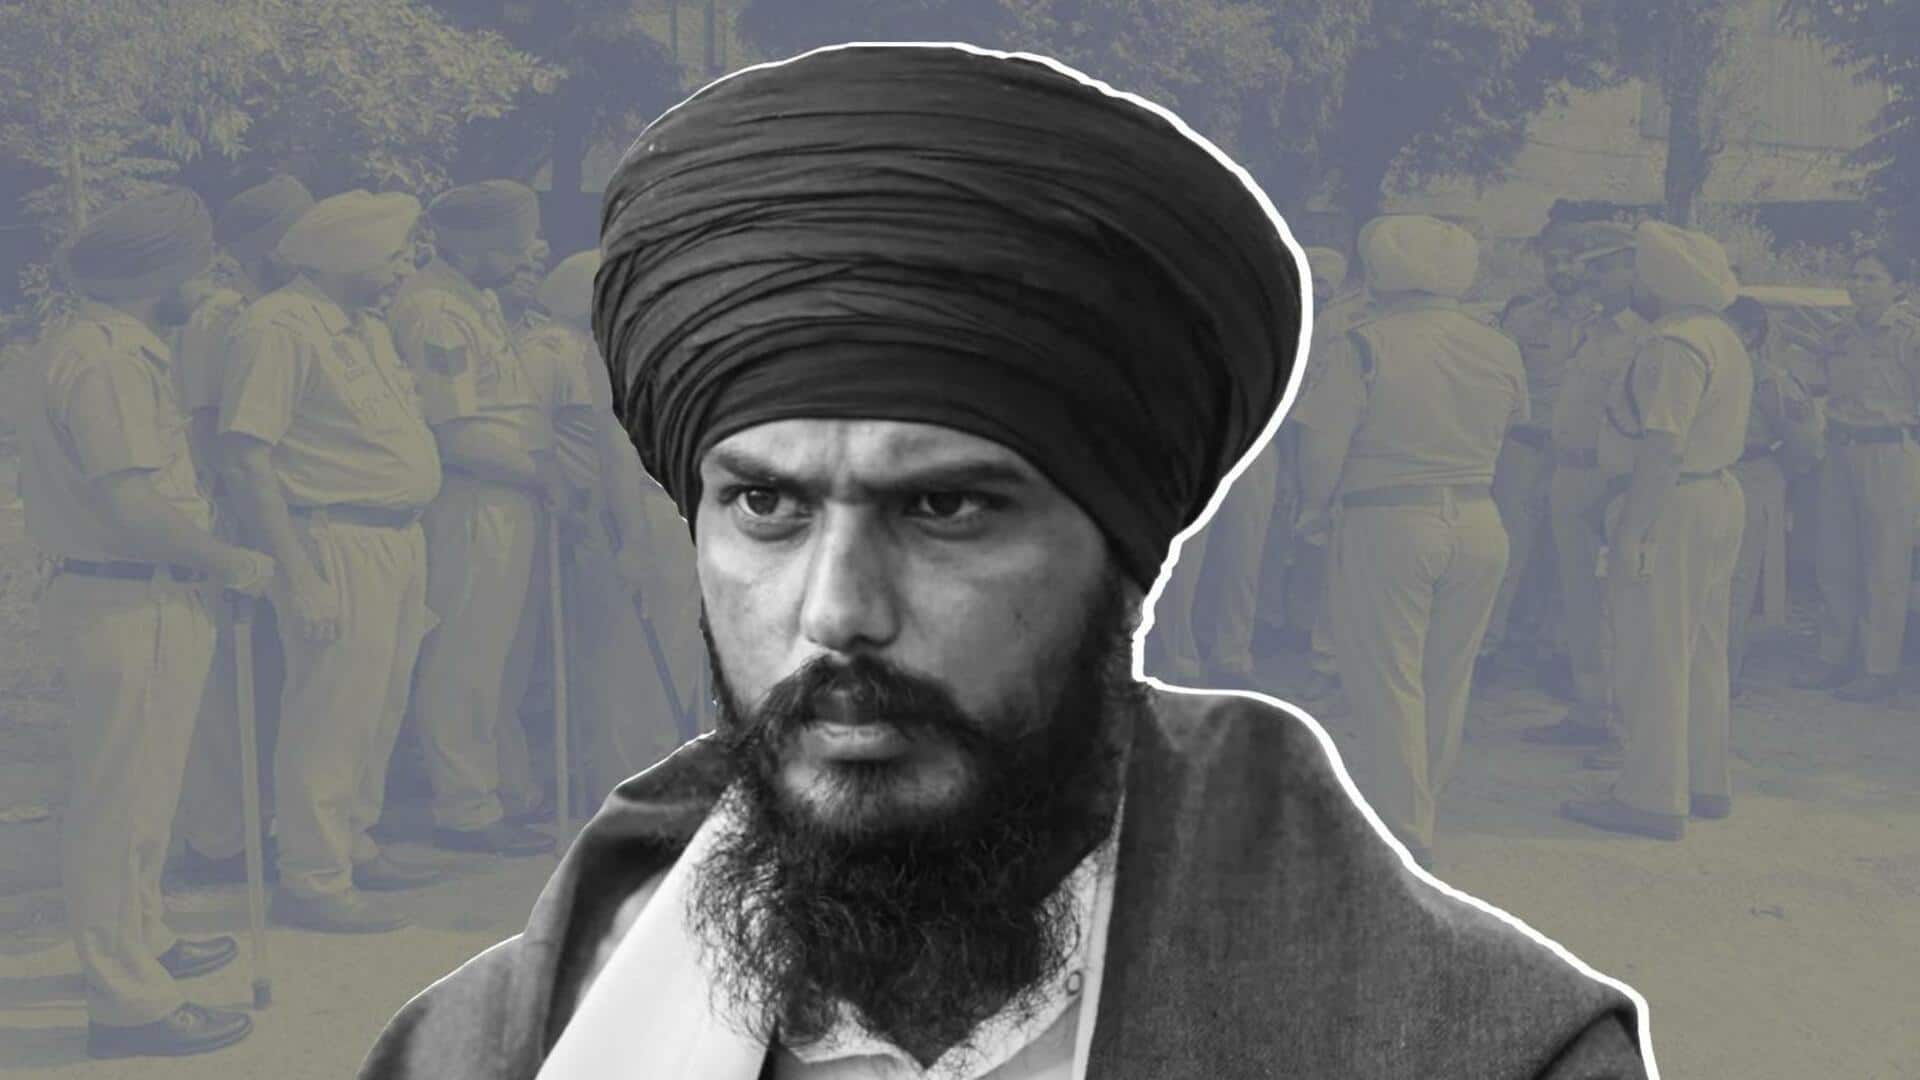 खालिस्तान समर्थक अमृतपाल सिंह दिल्ली में दिखा; पहचान छिपाने के लिए पगड़ी उतारी, बाल खोले